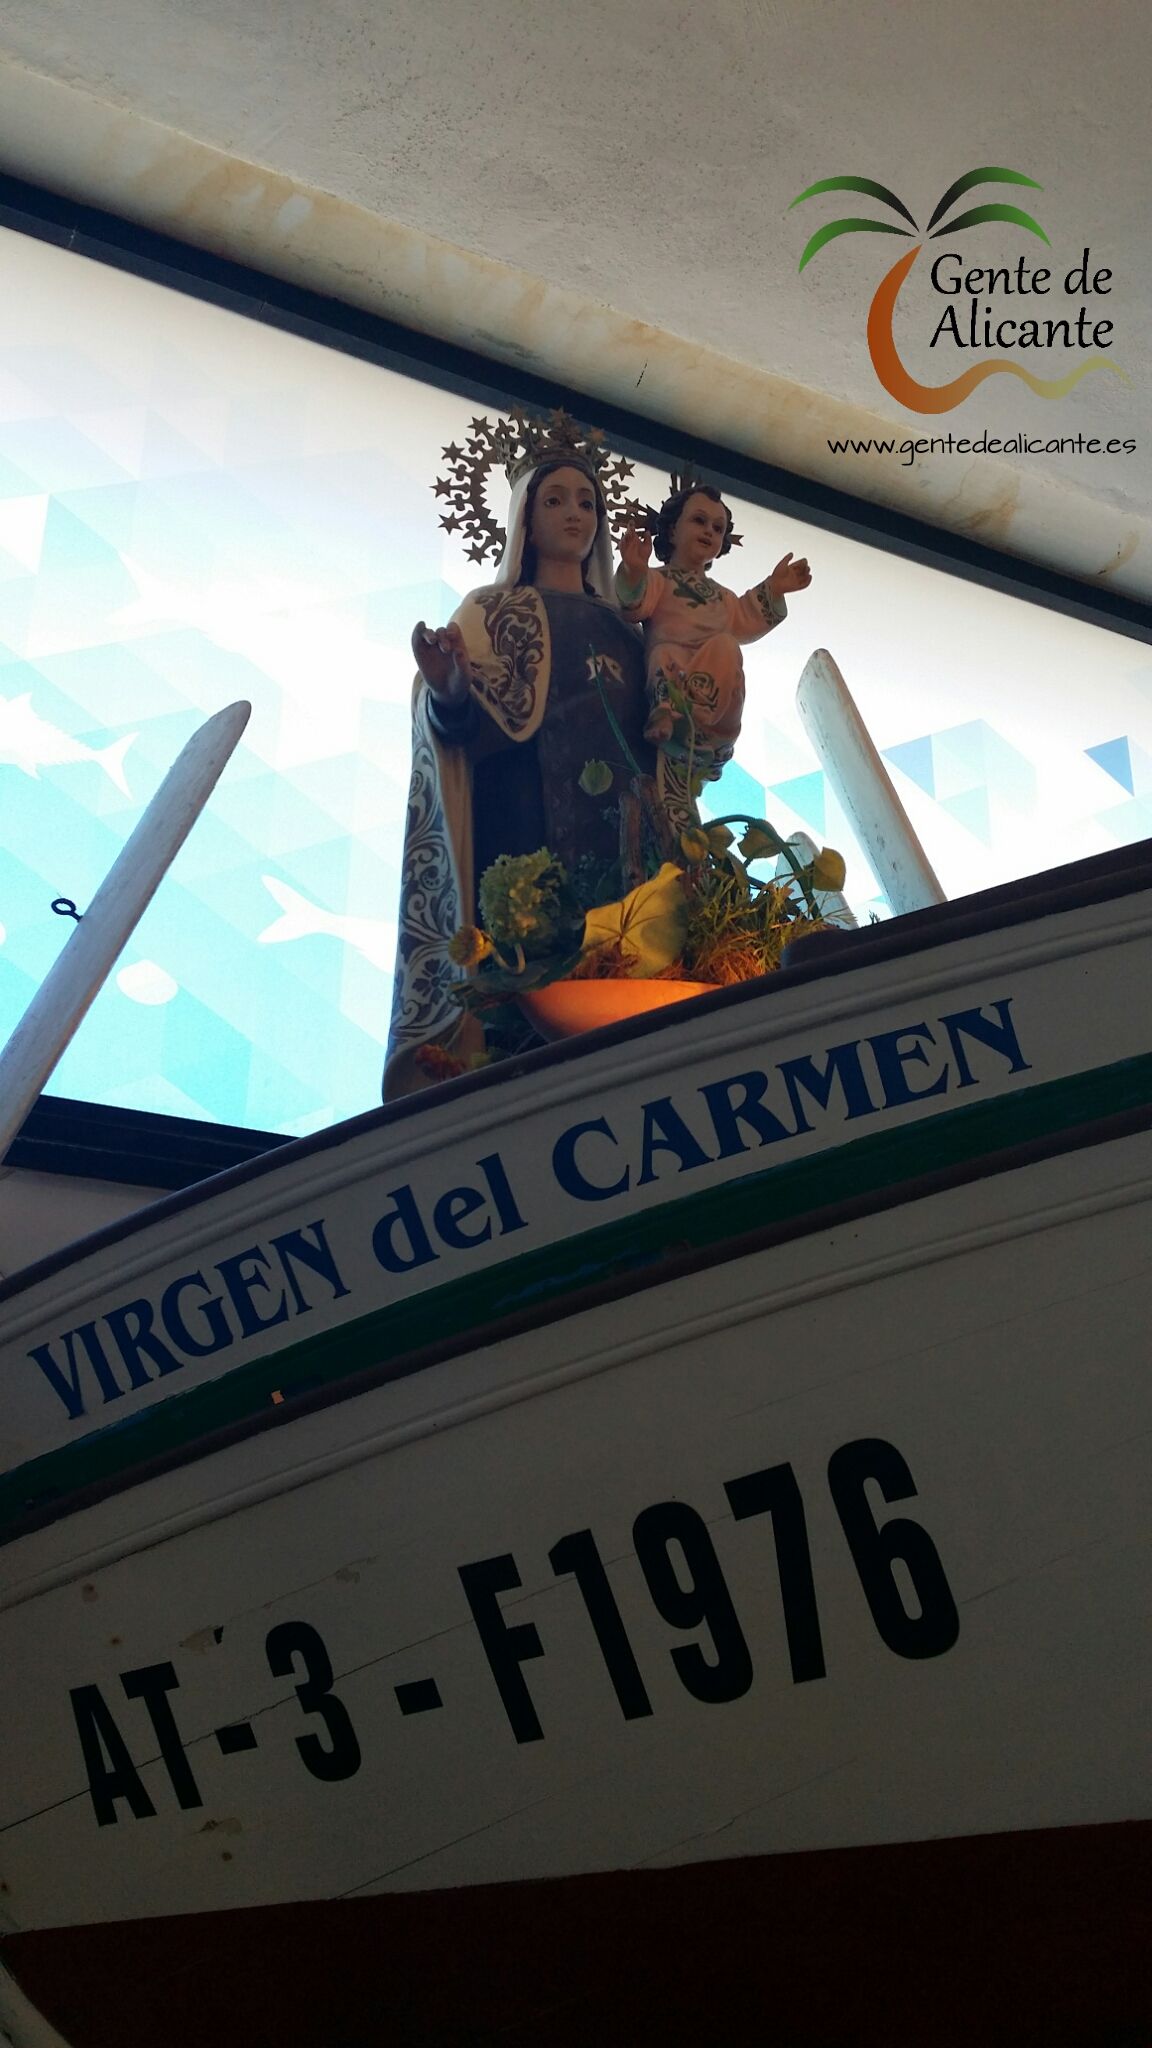 Virgen del Carmen Fiestas de El Campello